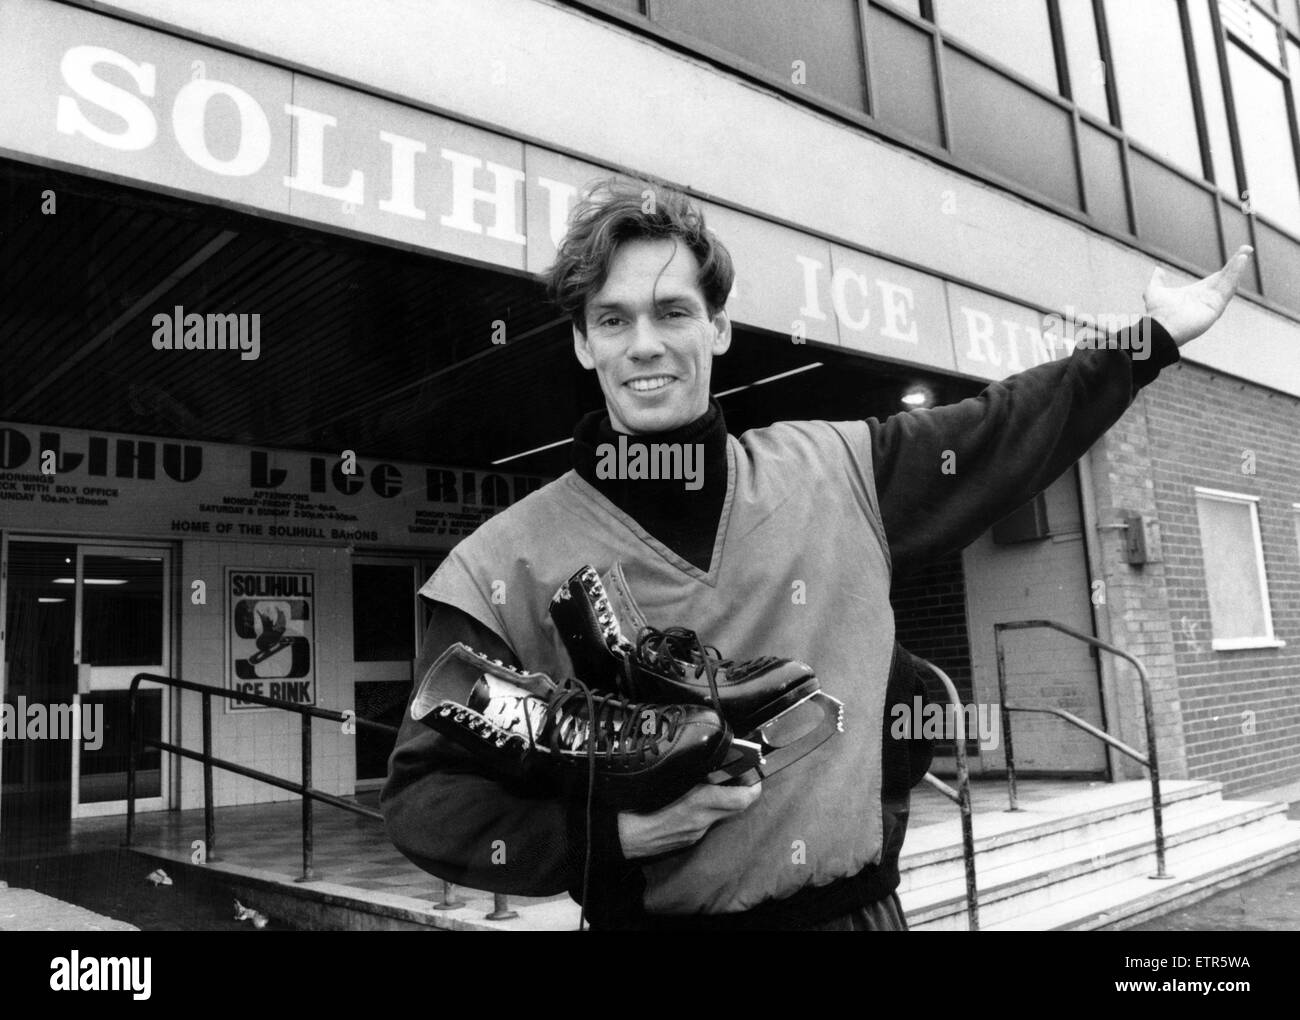 John Curry, der ehemalige Eiskunstlauf-Champion kommt in Solihull Eisbahn, wo er hofft, ein paar Tipps an vielversprechenden Jugendlichen weiterzugeben. 10. Juni 1988. Stockfoto